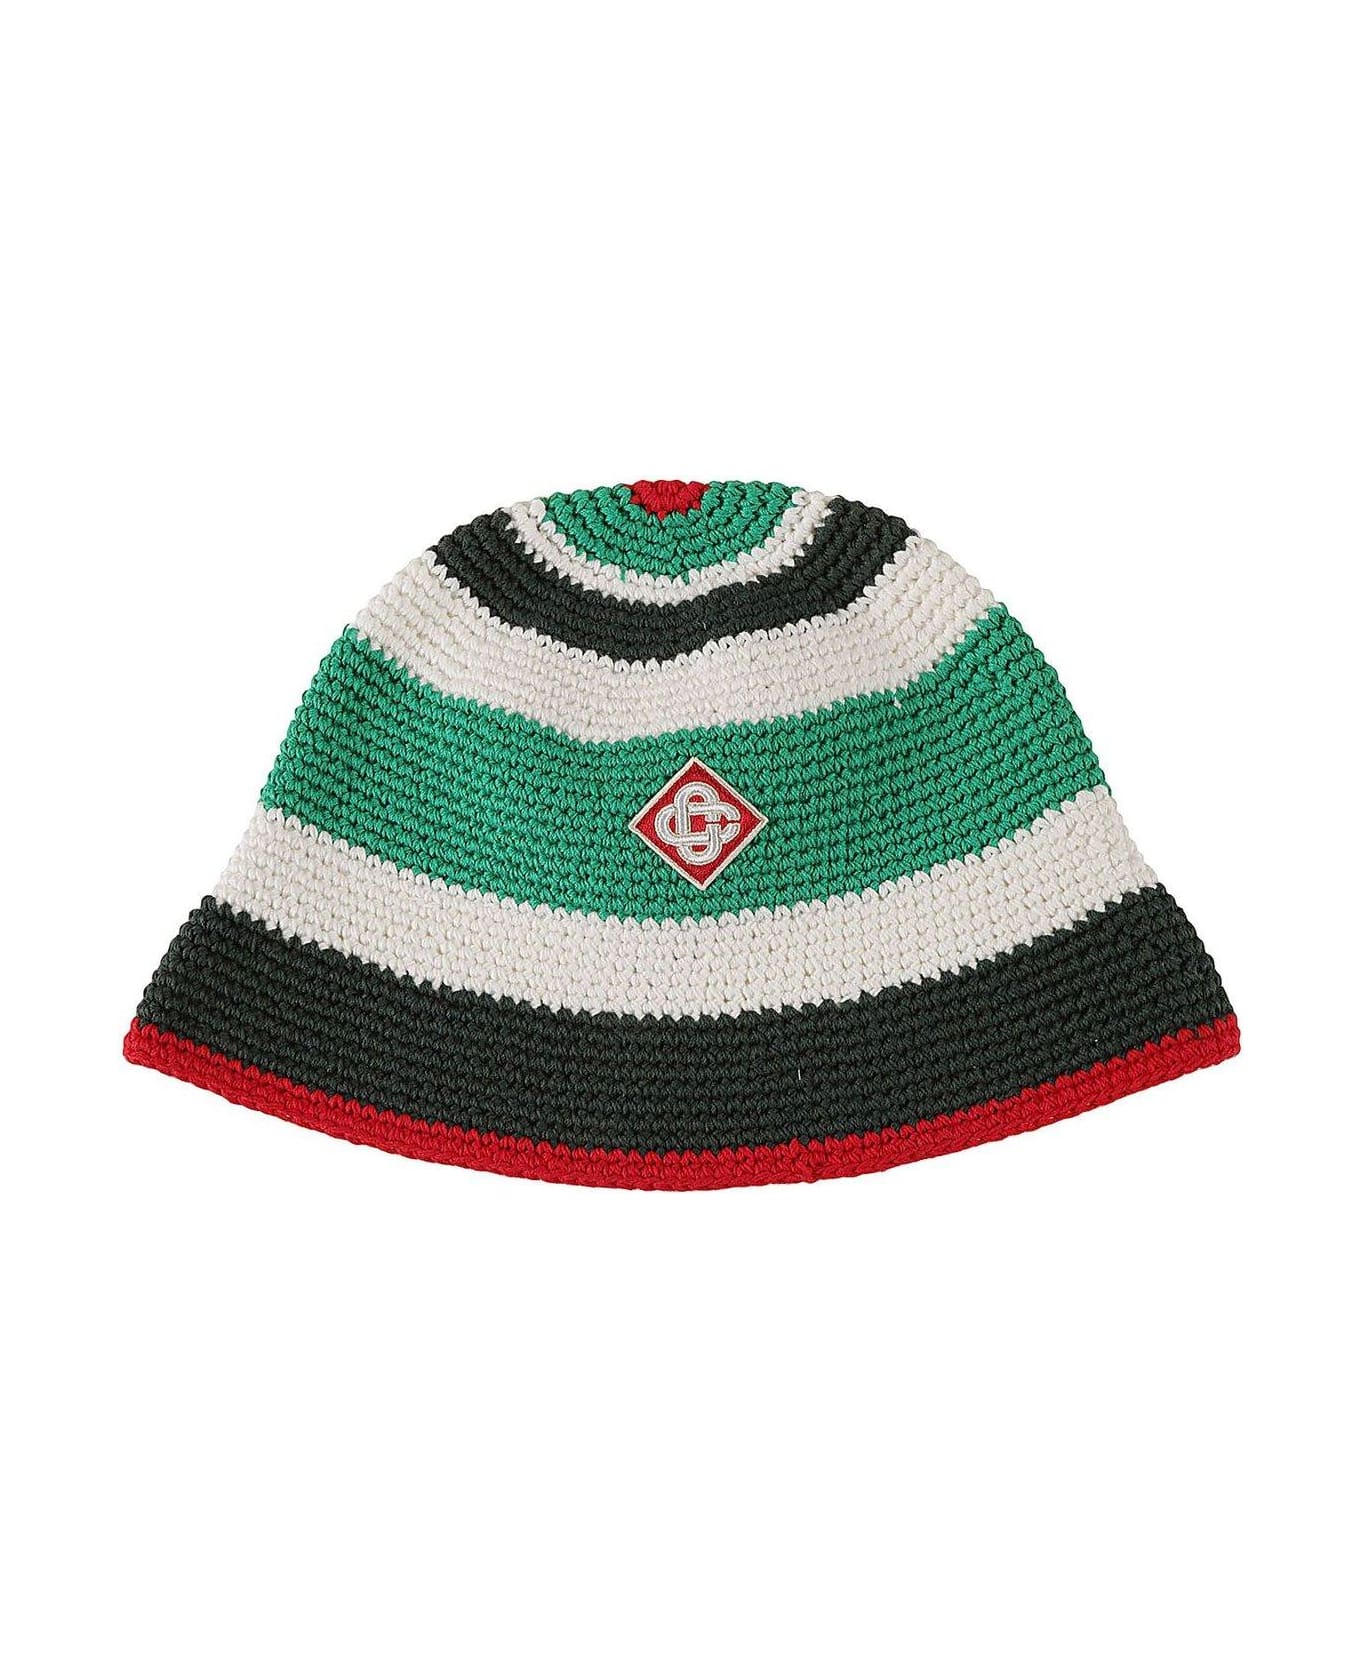 Casablanca Logo Patch Crochet Hat - Multicolor